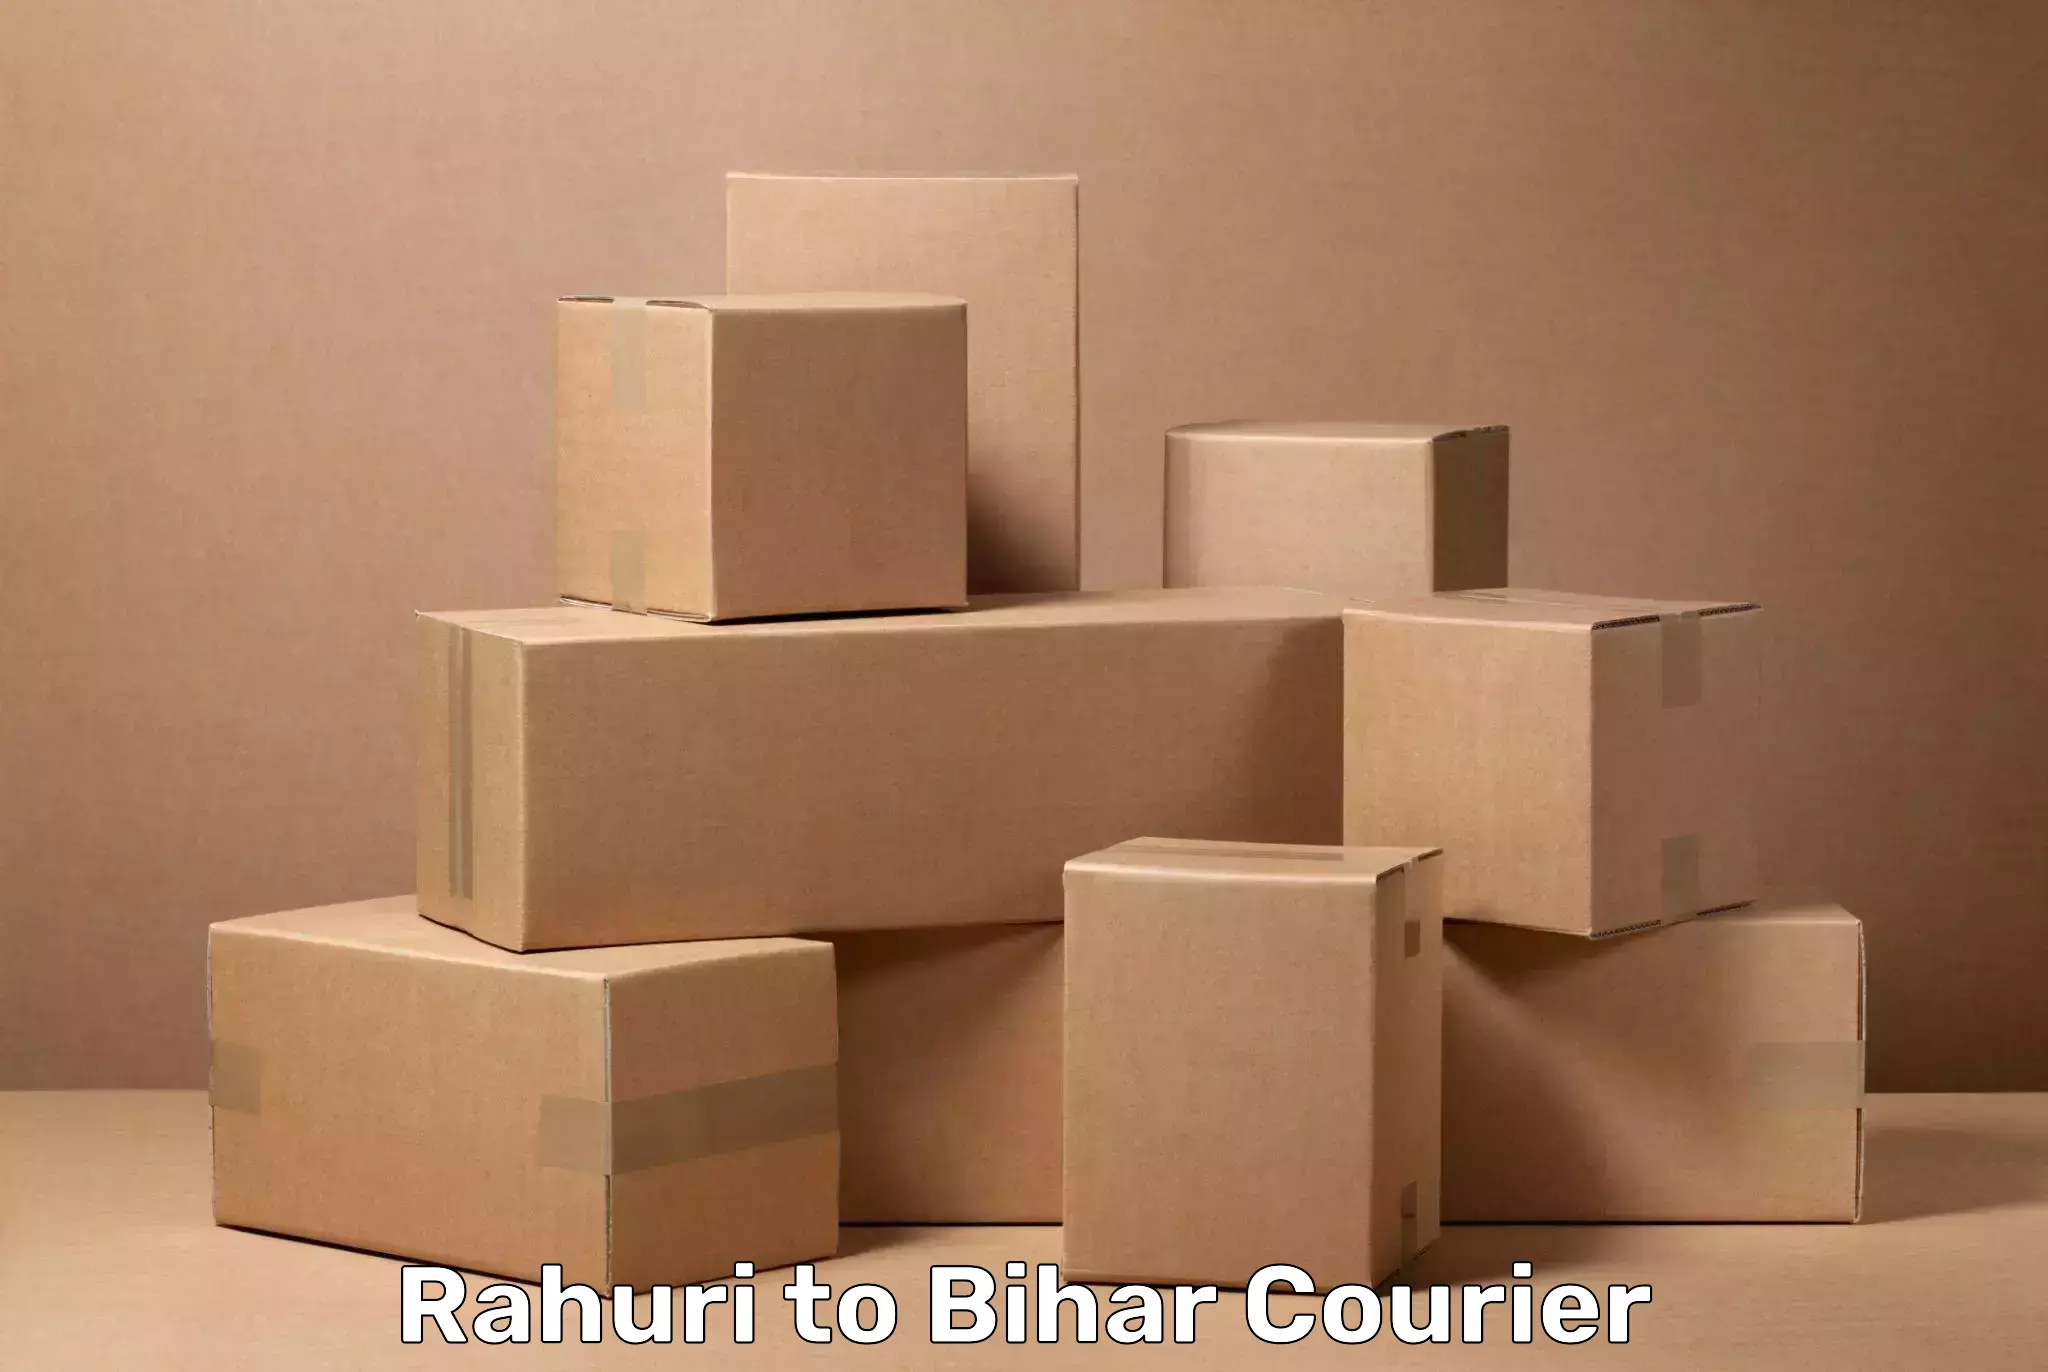 Baggage transport scheduler Rahuri to Bihar